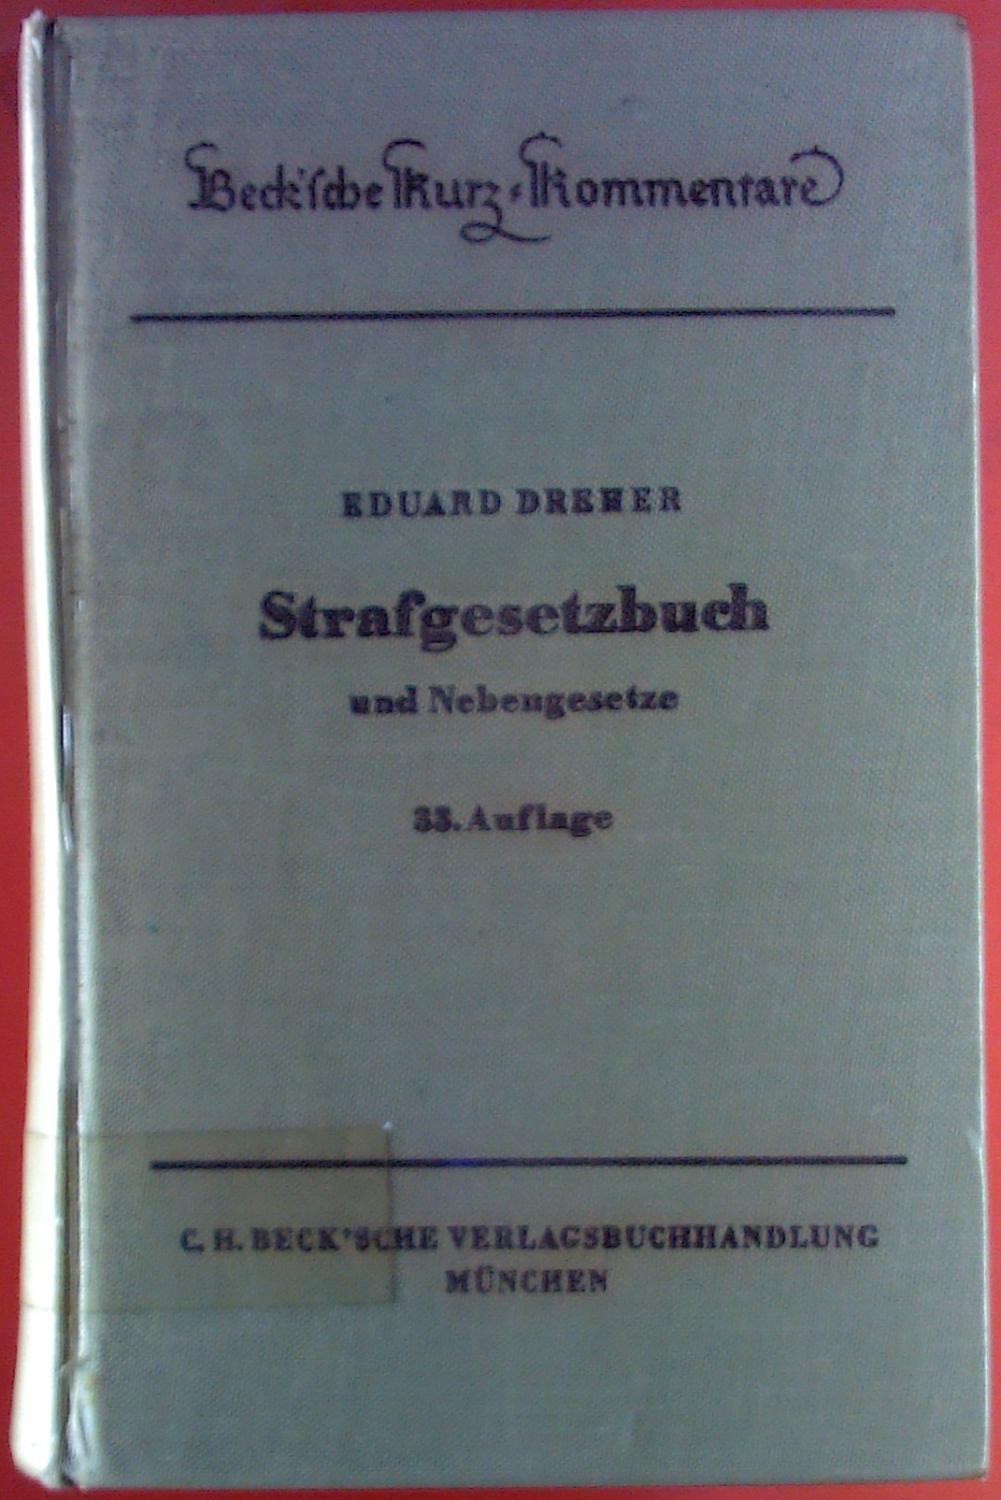 Strafgesetzbuch und Nebengesetze 33. Auflage. Becksche Kurz-Kommentare.